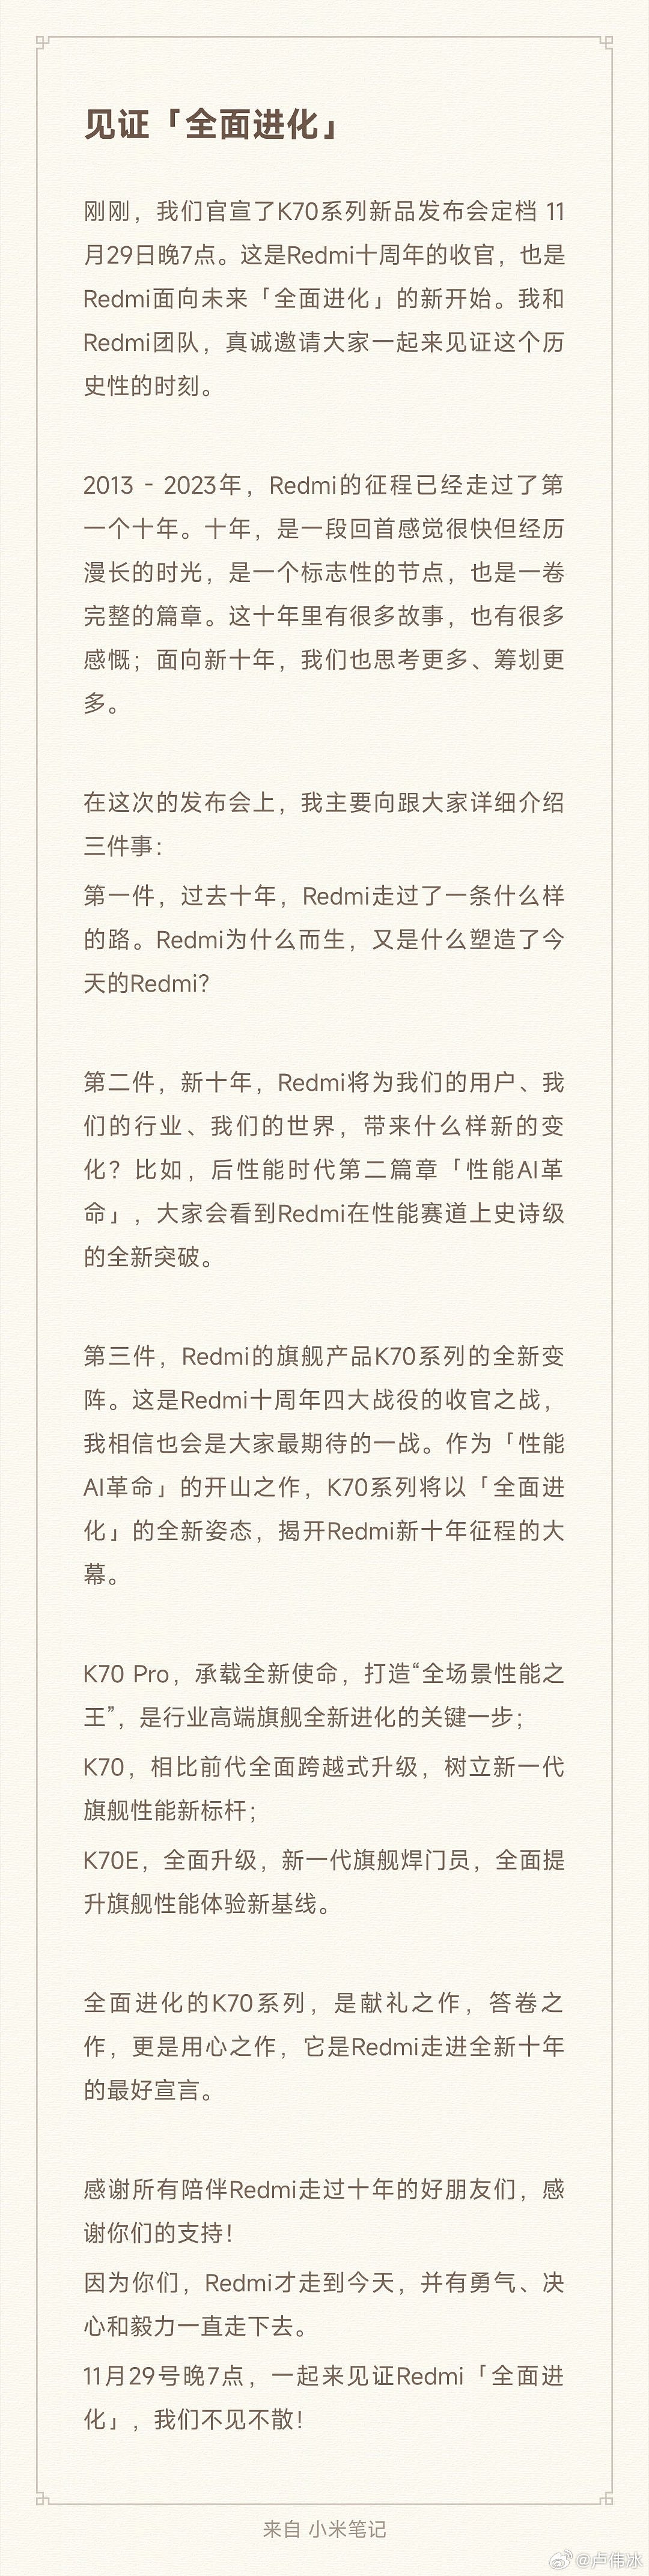 小米官宣 Redmi 十周年暨 K70 系列手机新品发布会定档 11 月 29 日 - 2